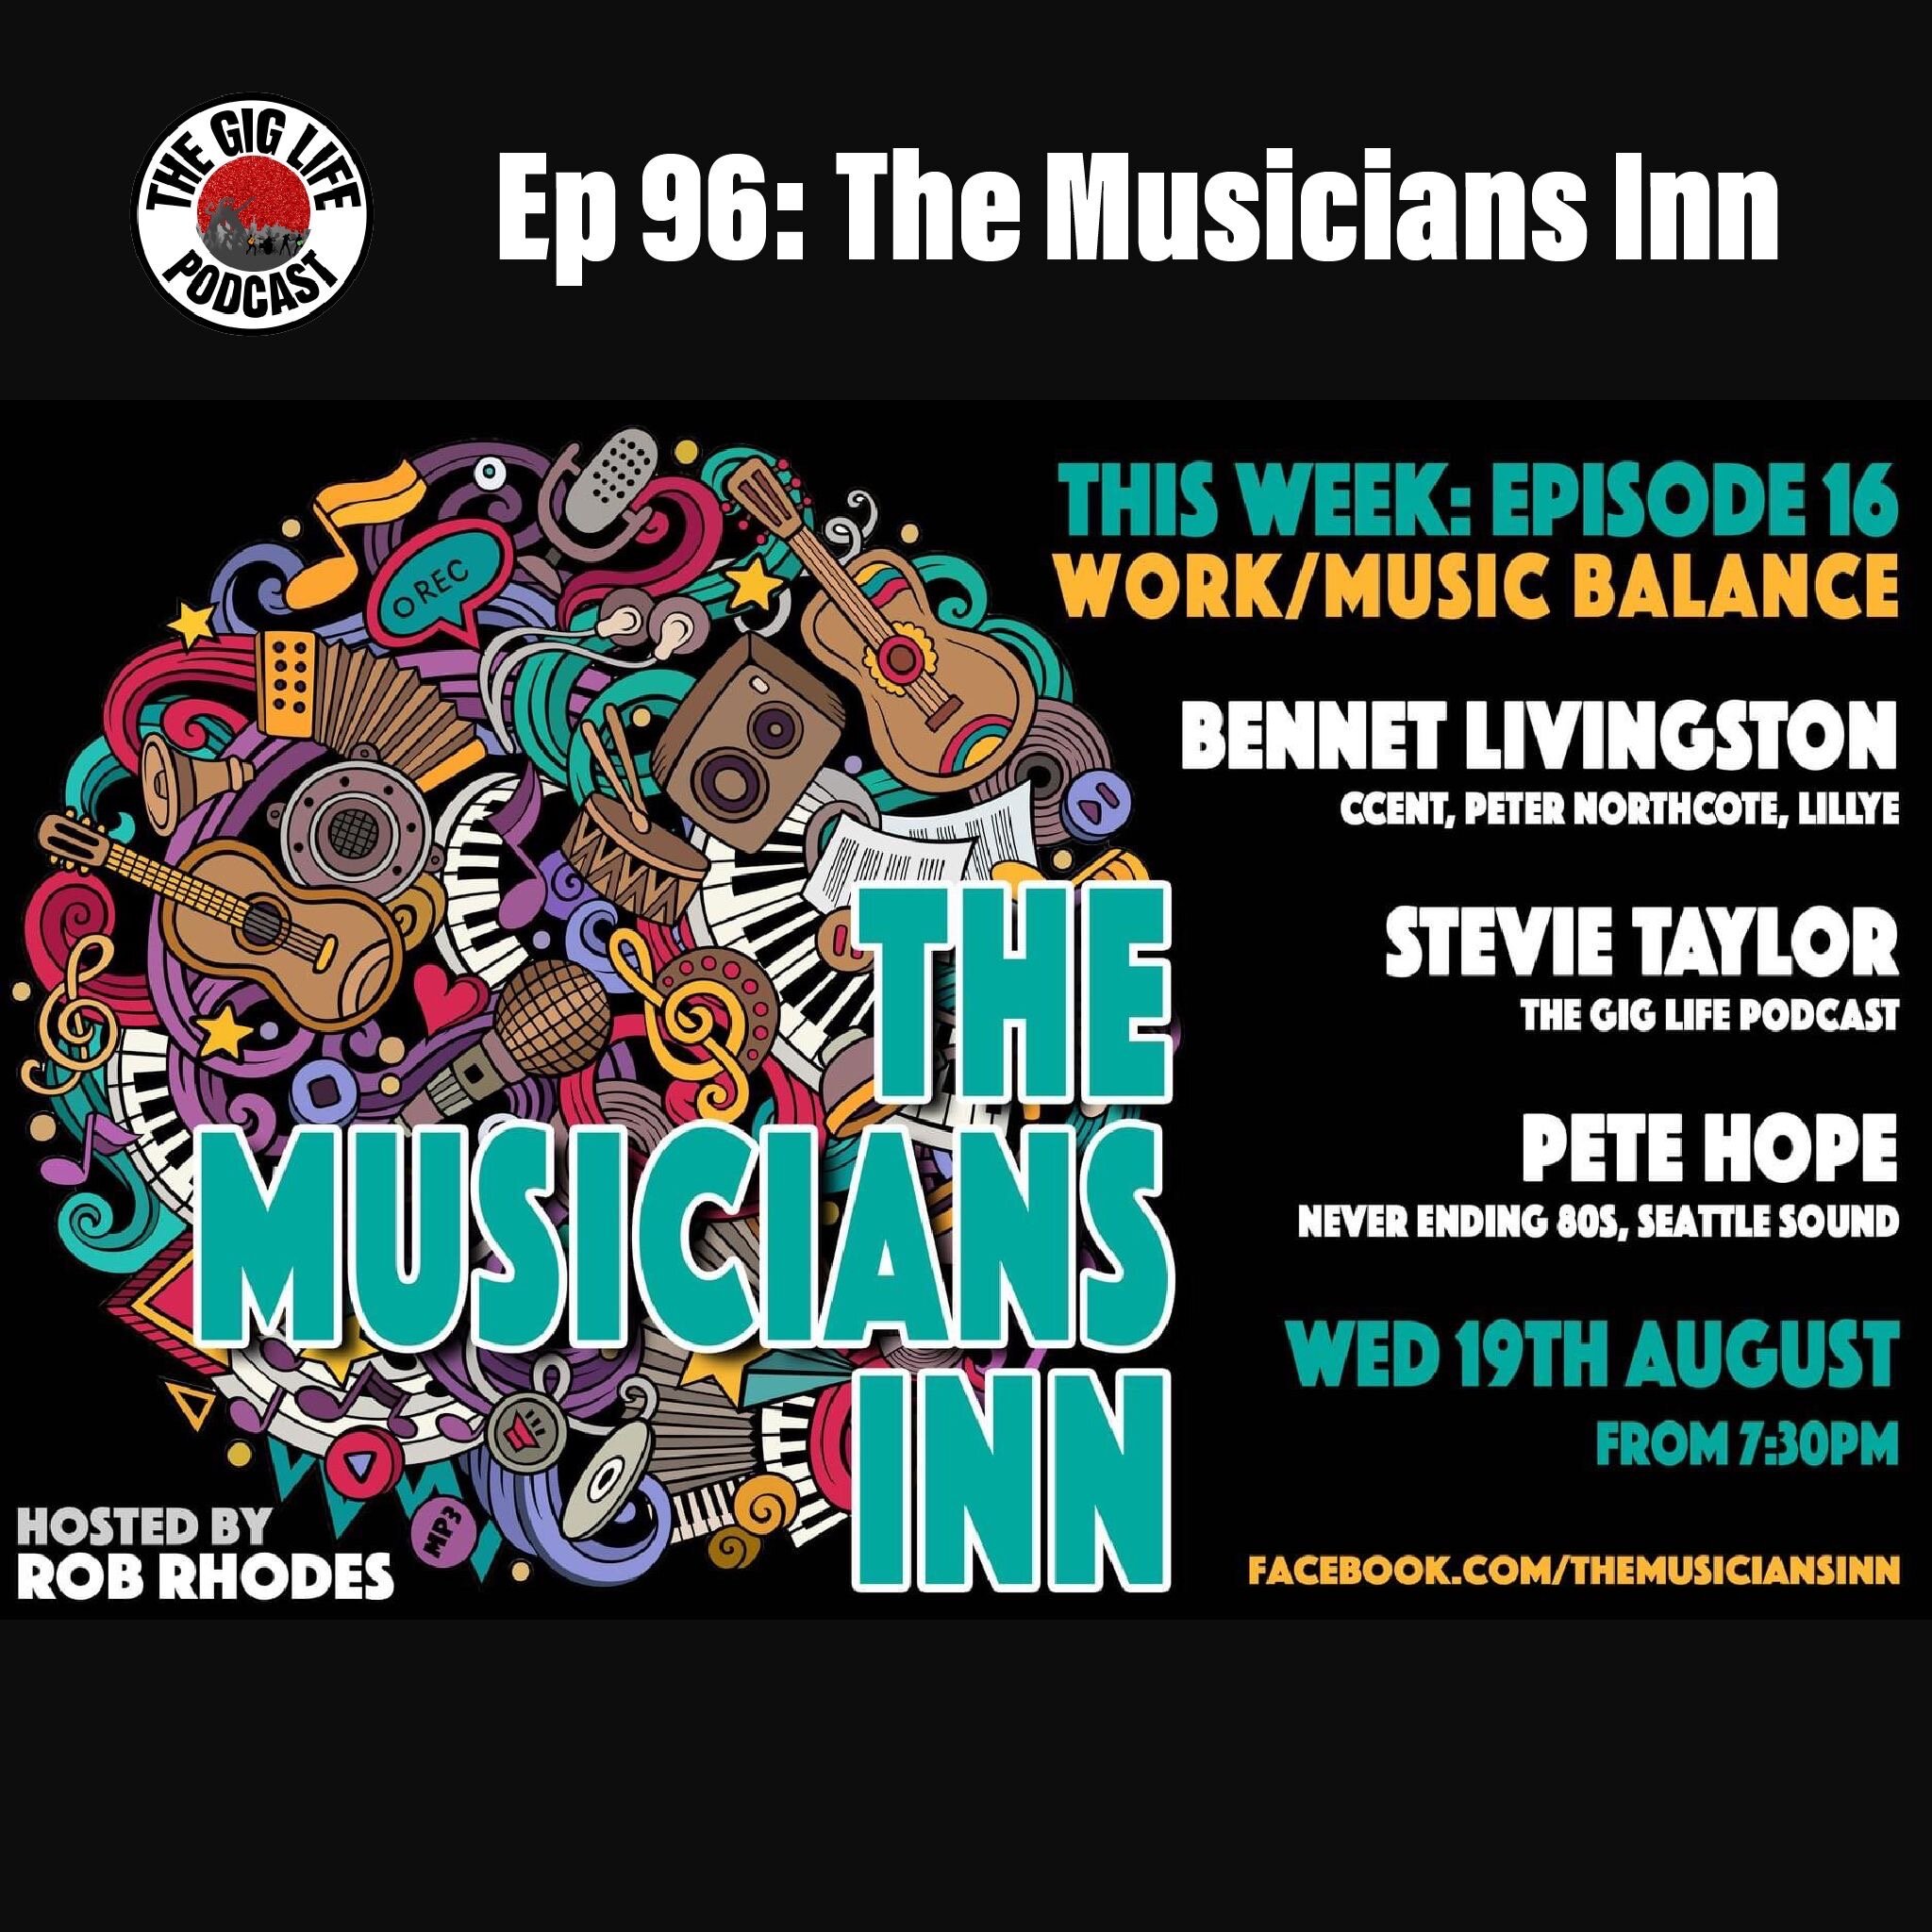 Ep 96: The Musicians Inn (Bonus)